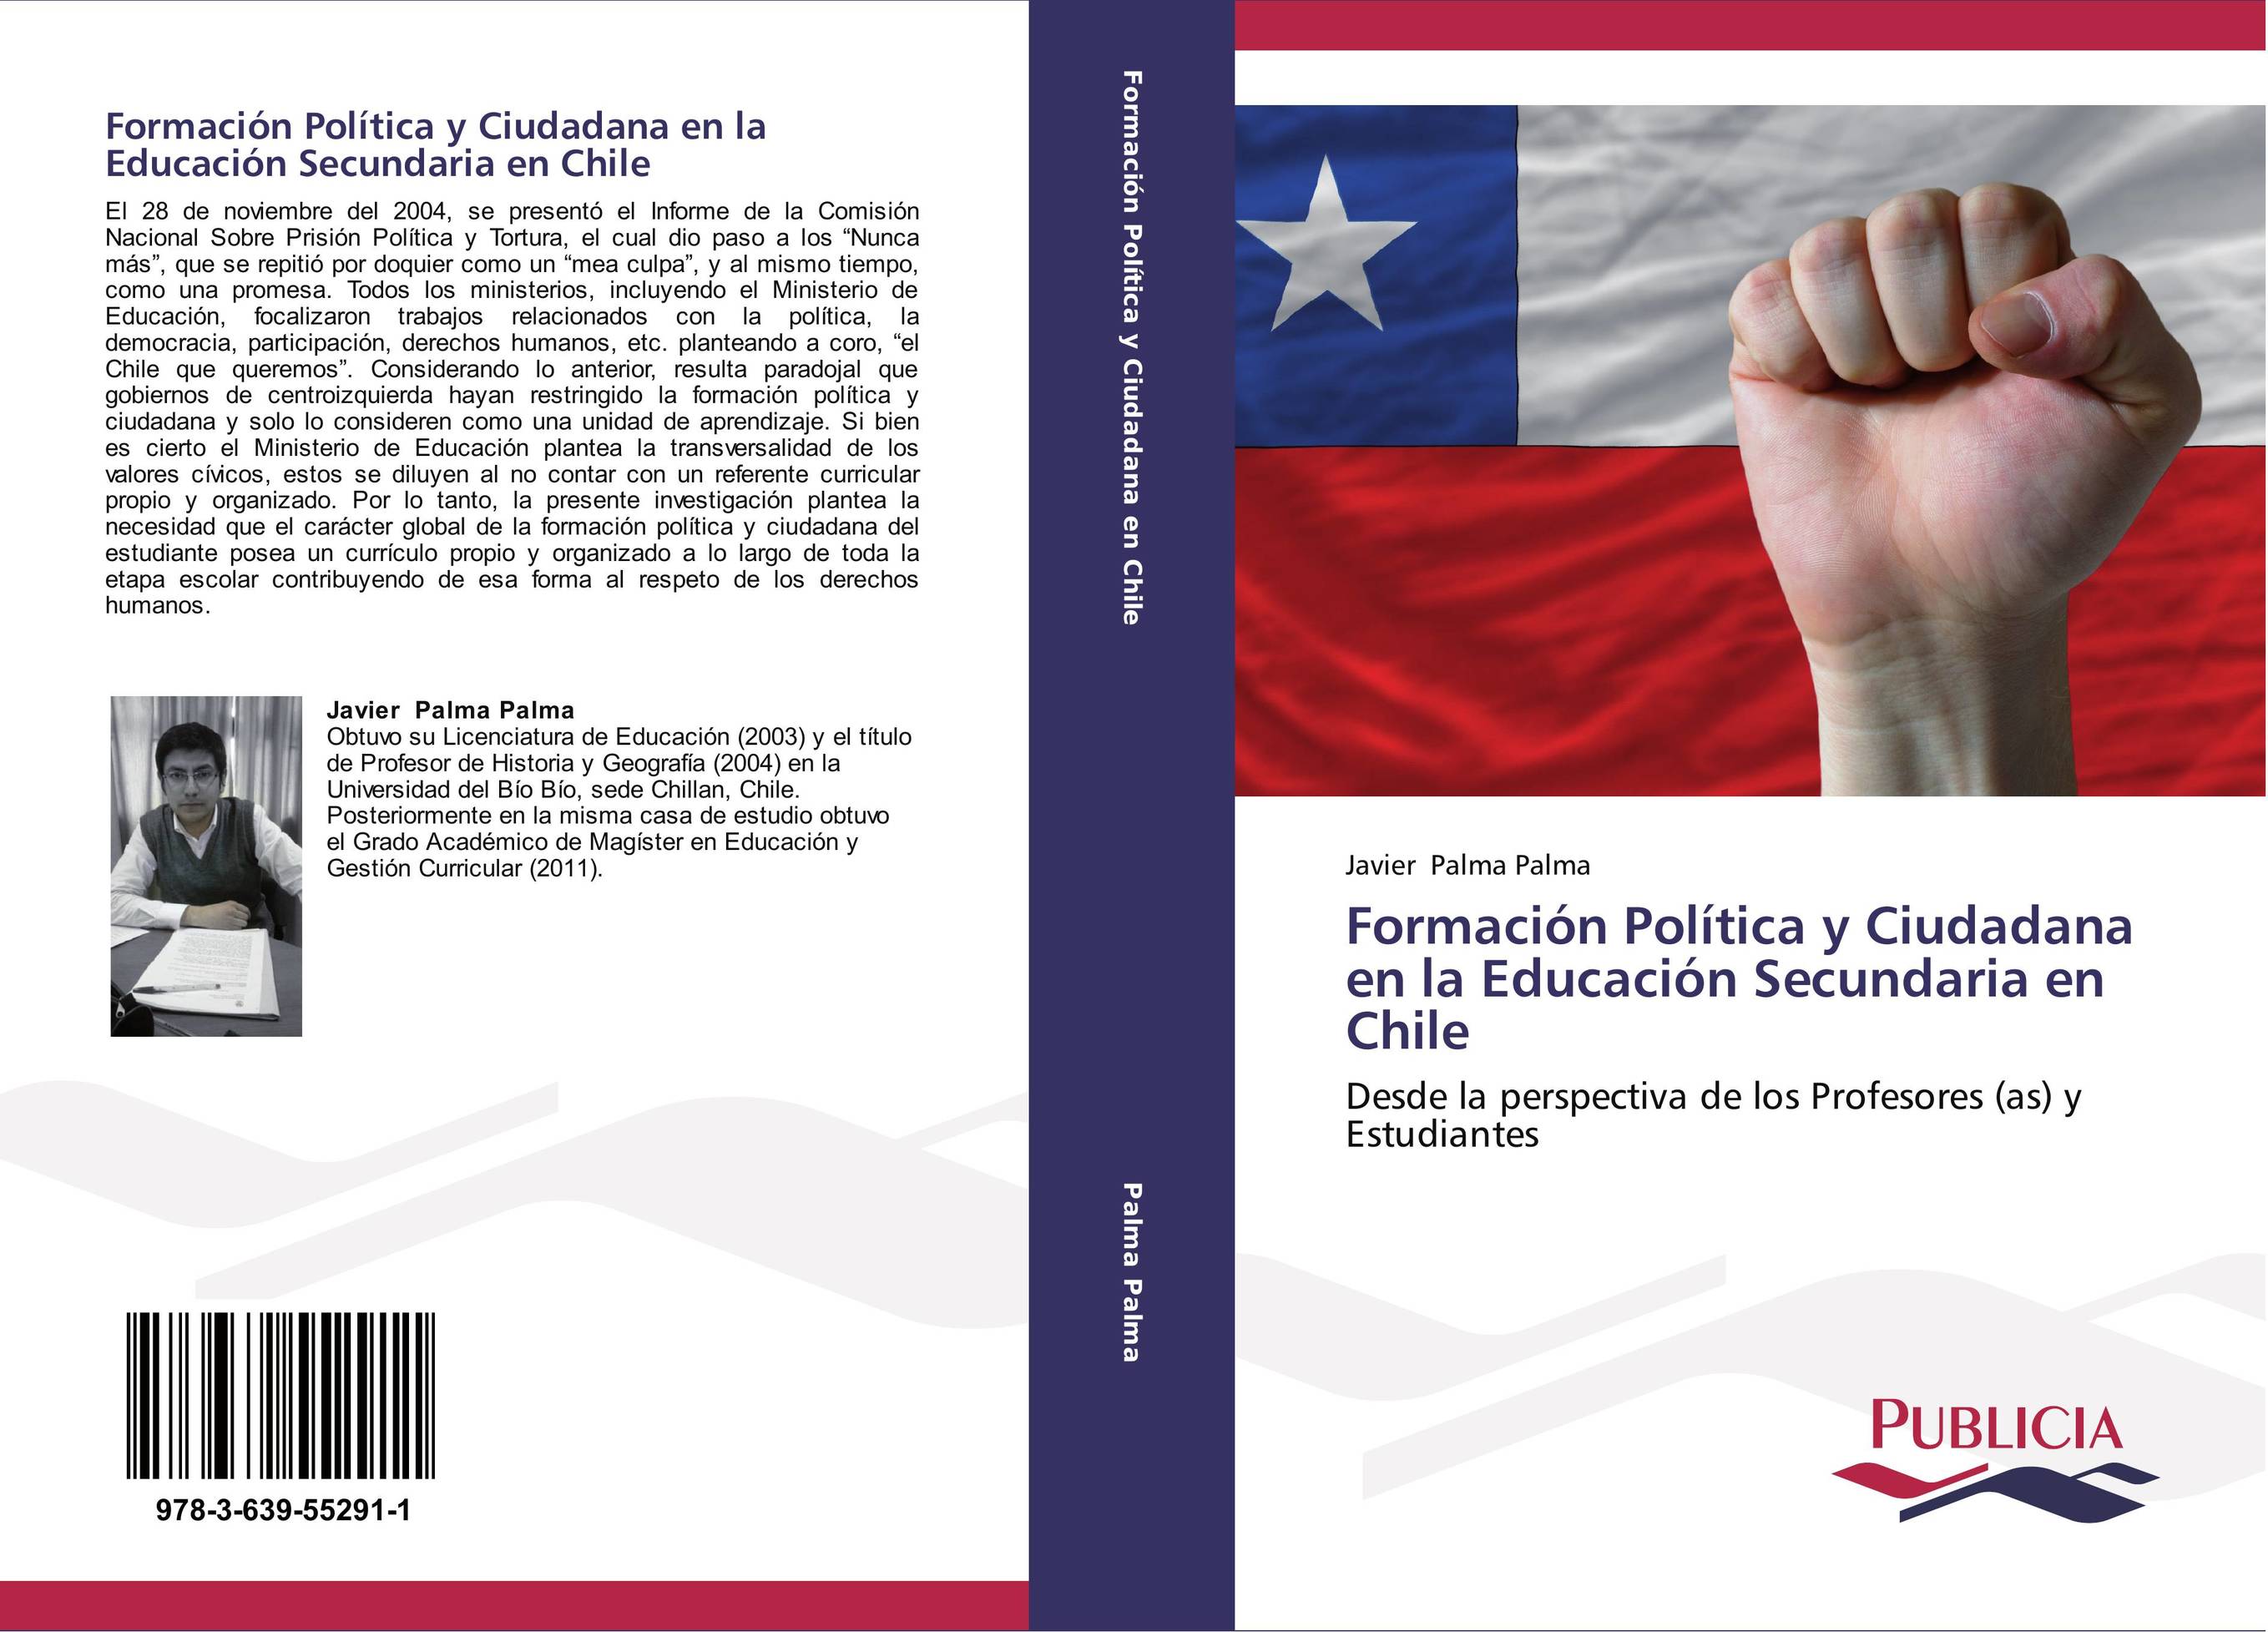 Formación Política y Ciudadana en la Educación Secundaria en Chile